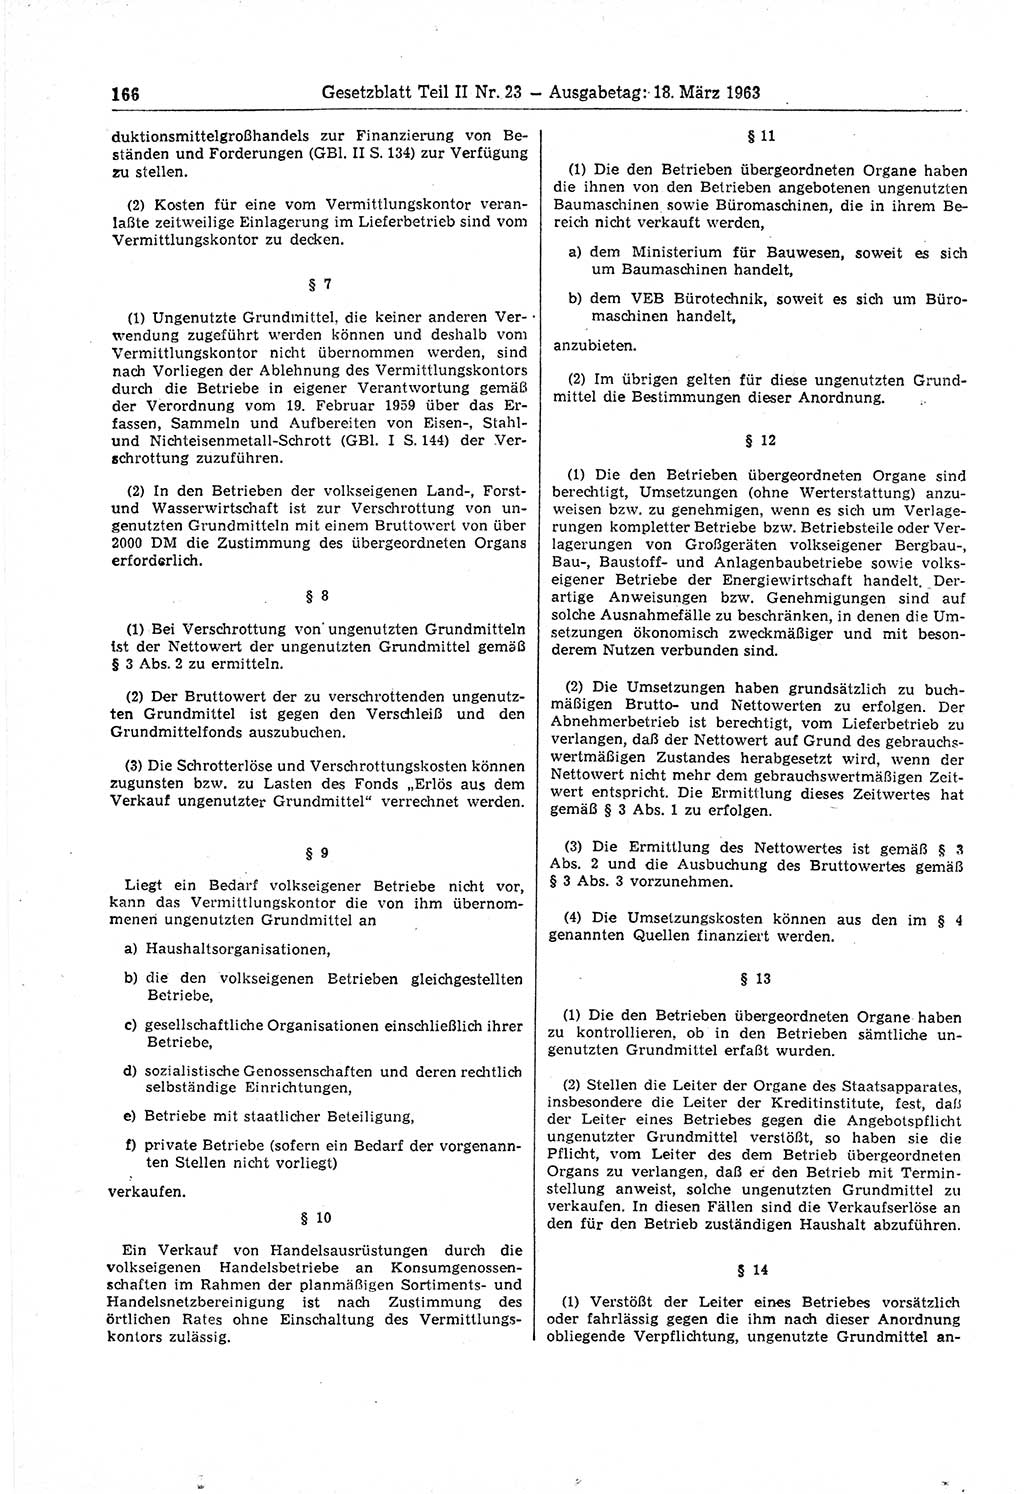 Gesetzblatt (GBl.) der Deutschen Demokratischen Republik (DDR) Teil ⅠⅠ 1963, Seite 166 (GBl. DDR ⅠⅠ 1963, S. 166)